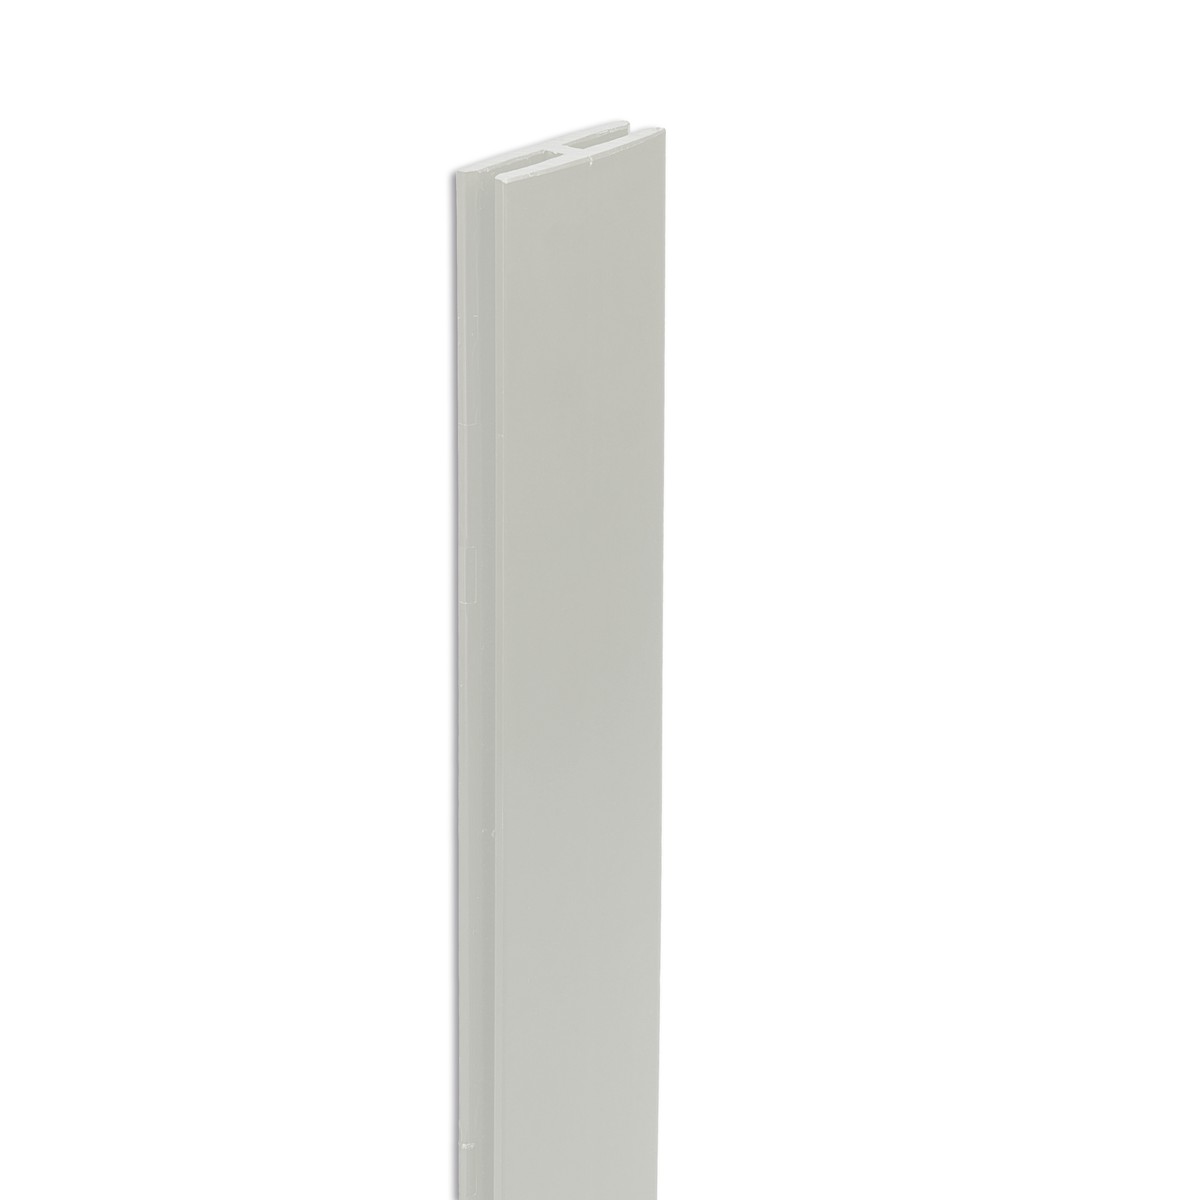   PROFIL 'H' BL x10(Profile haut et bas) Blanc albâtre 2m